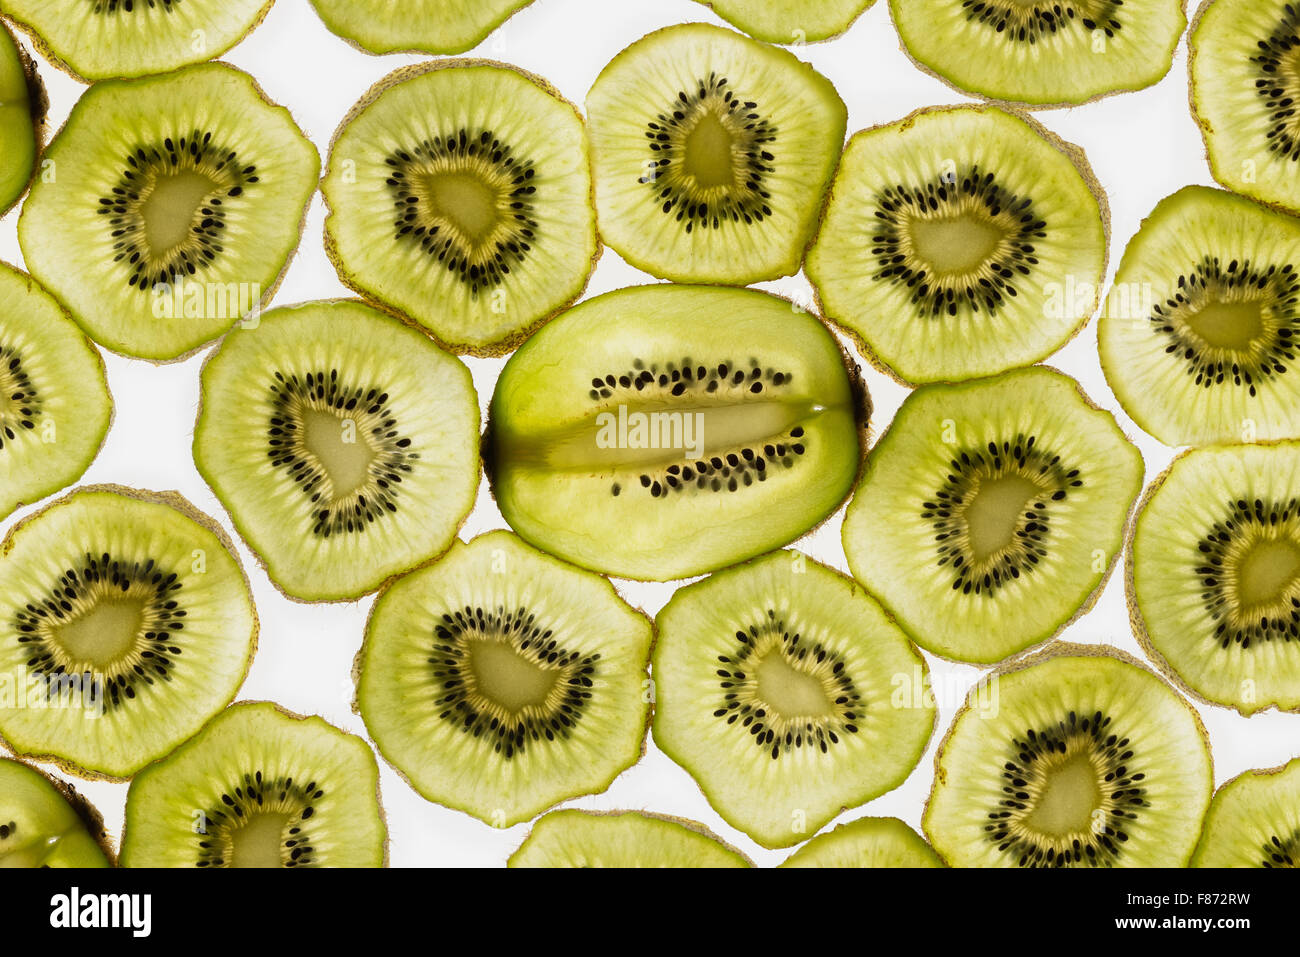 Esotica frutta kiwi retroilluminato in studio il taglio trasversale e longitudinale che mostra le sezioni interne di distribuzione di sementi intorno al nucleo centrale Foto Stock